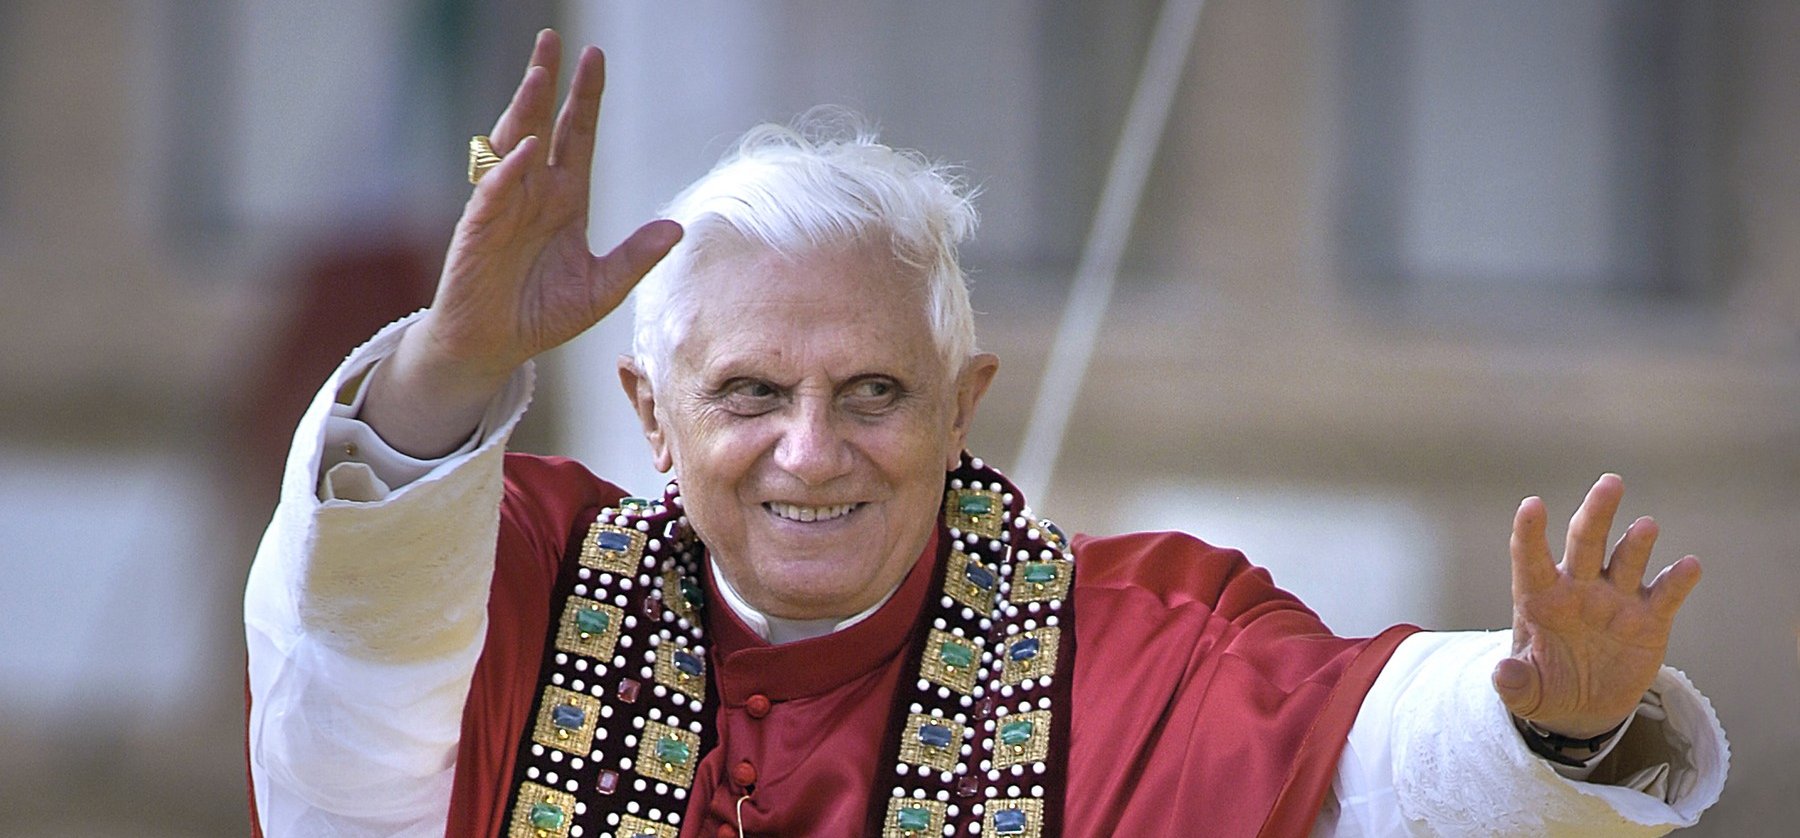 A Vatikán közleményt adott ki XVI. Benedek állapotáról